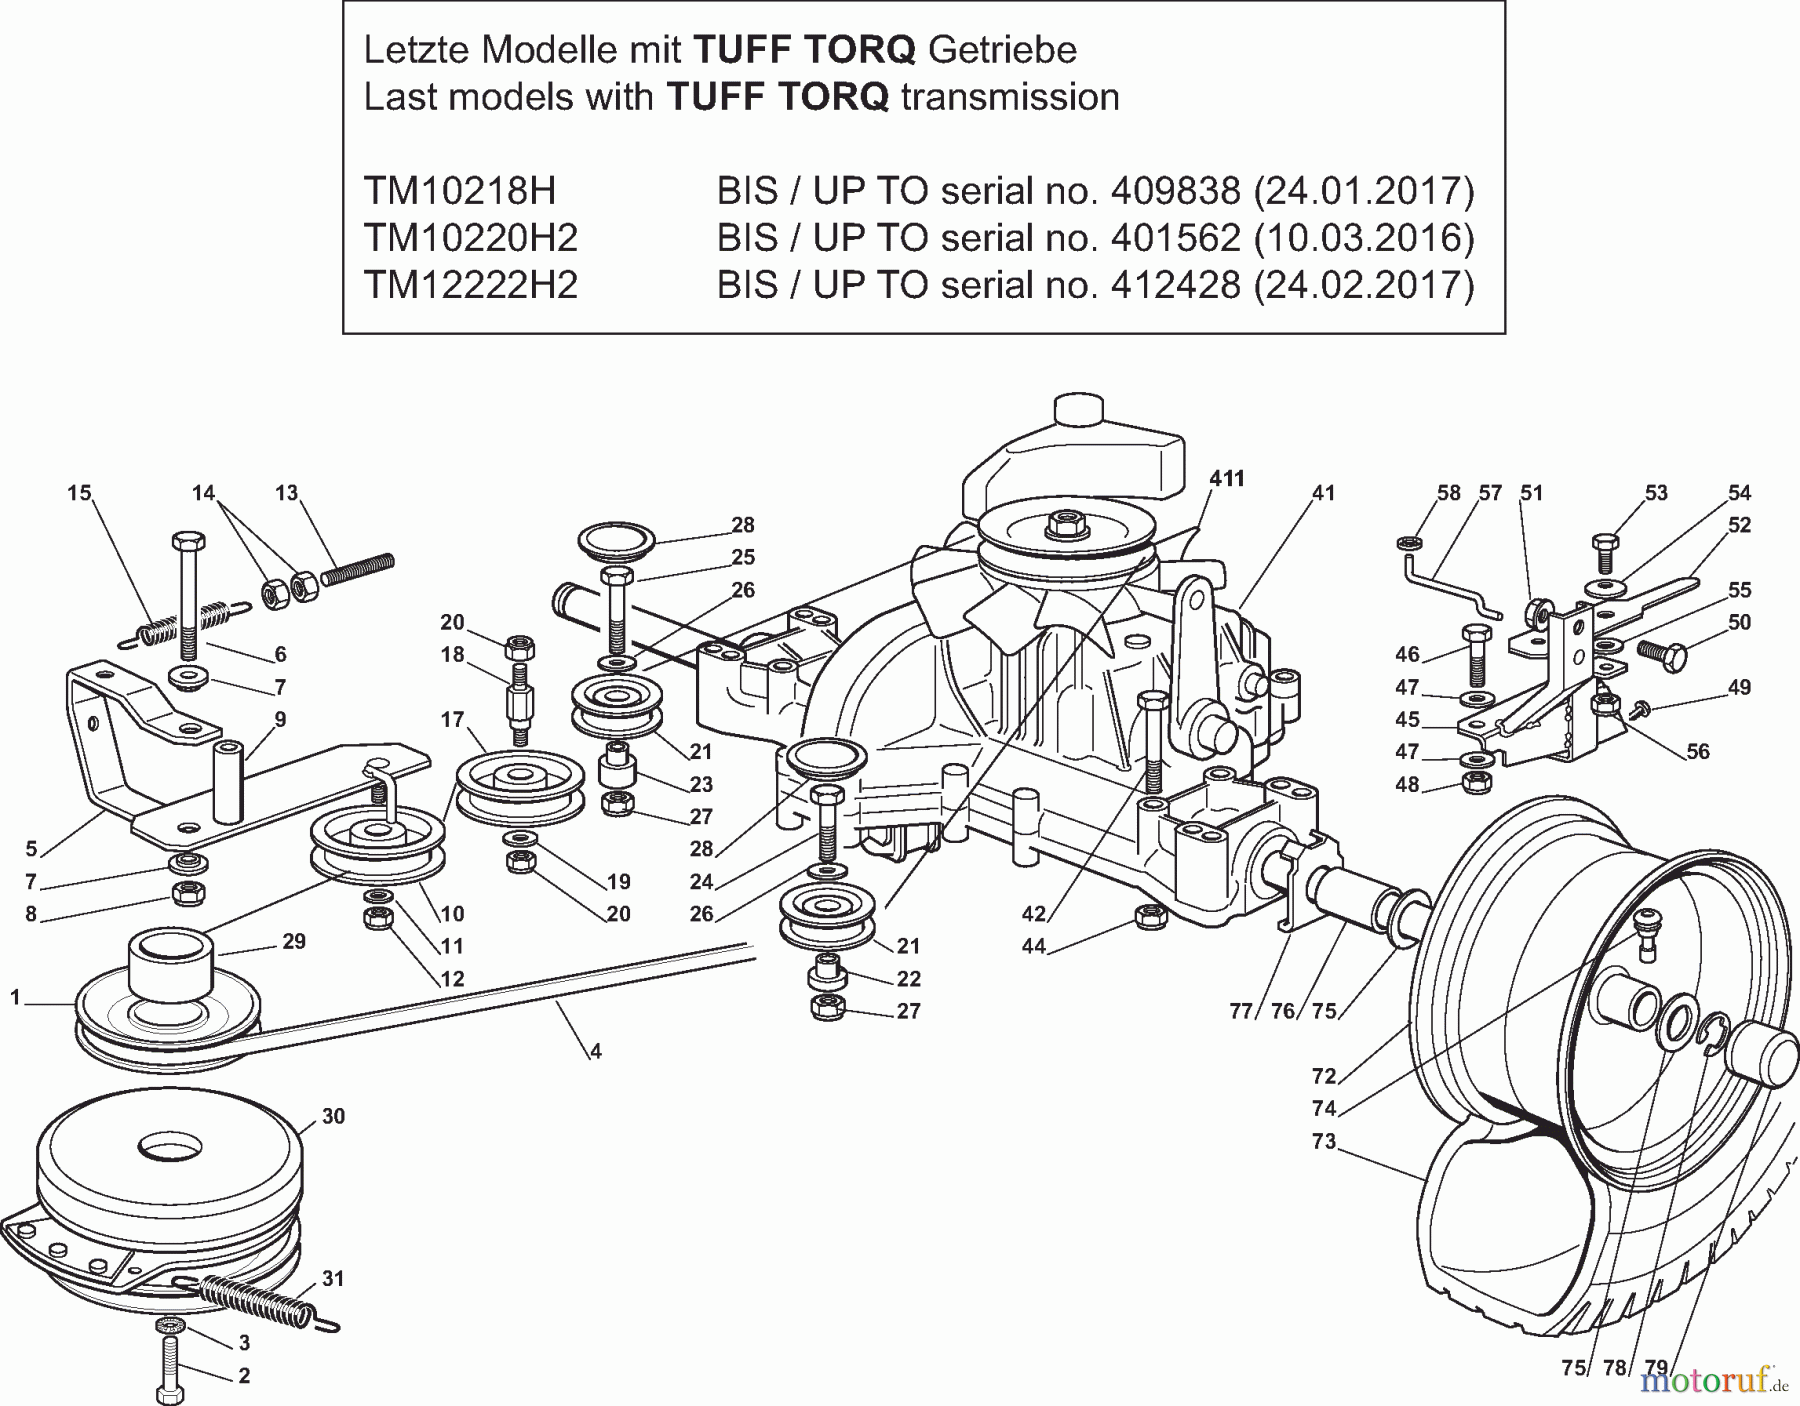  Dolmar Rasentraktoren TM10220H2 TM10220H2 (2015-2019) 6y  Getriebe TUFF TORQ